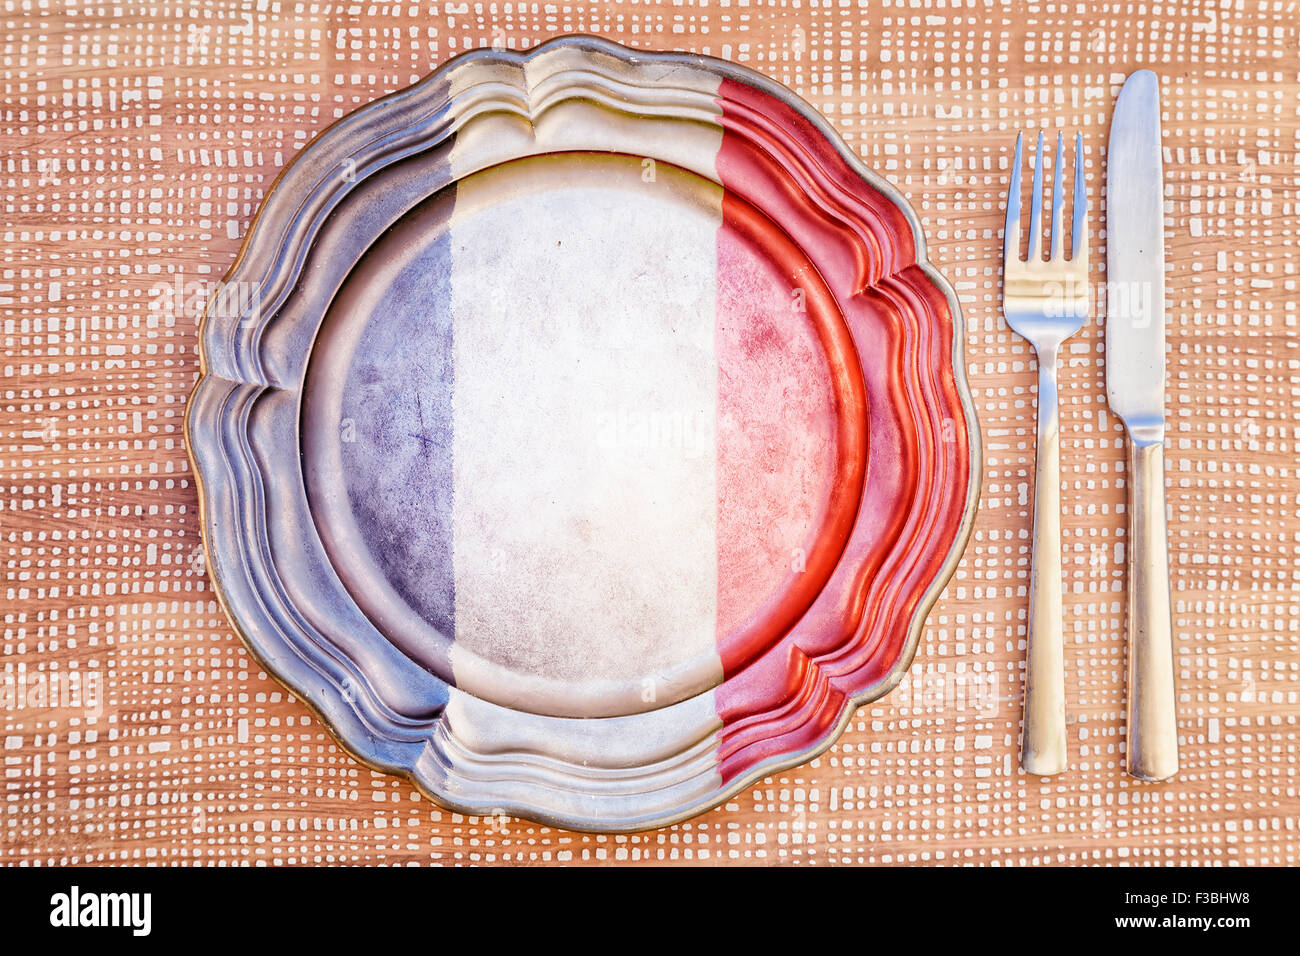 Cuisine française - assiette et couverts / Concept de cuisine française avec plaque vide de couleur avec les couleurs du drapeau français à côté de s Banque D'Images